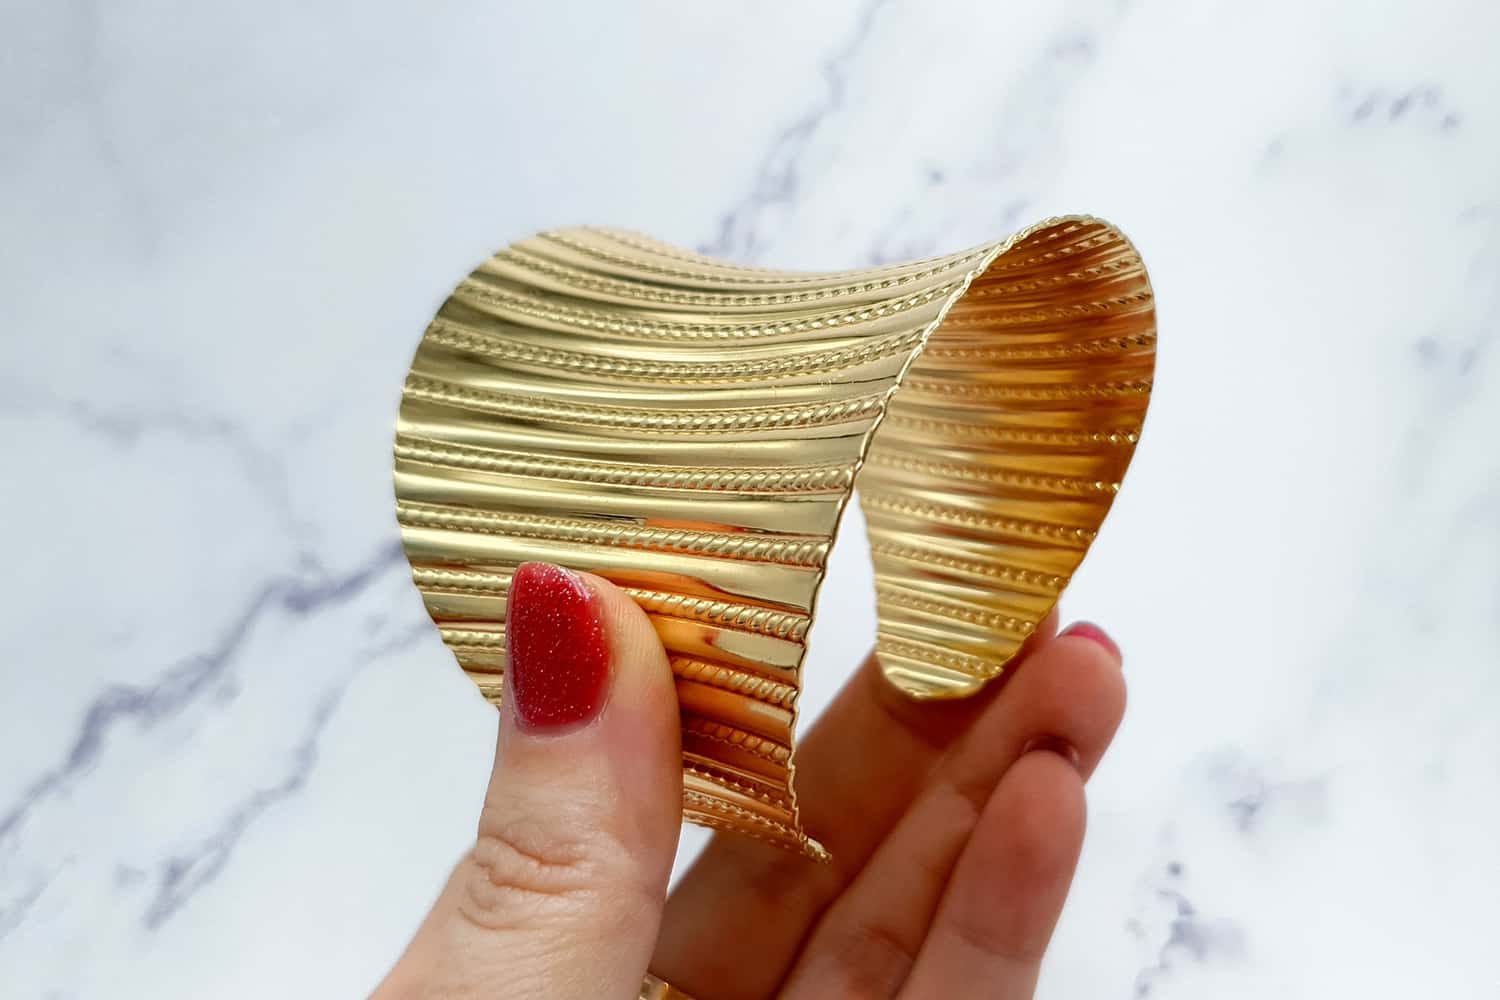 Bracelet metal base stripes pattern, golden color (23415)